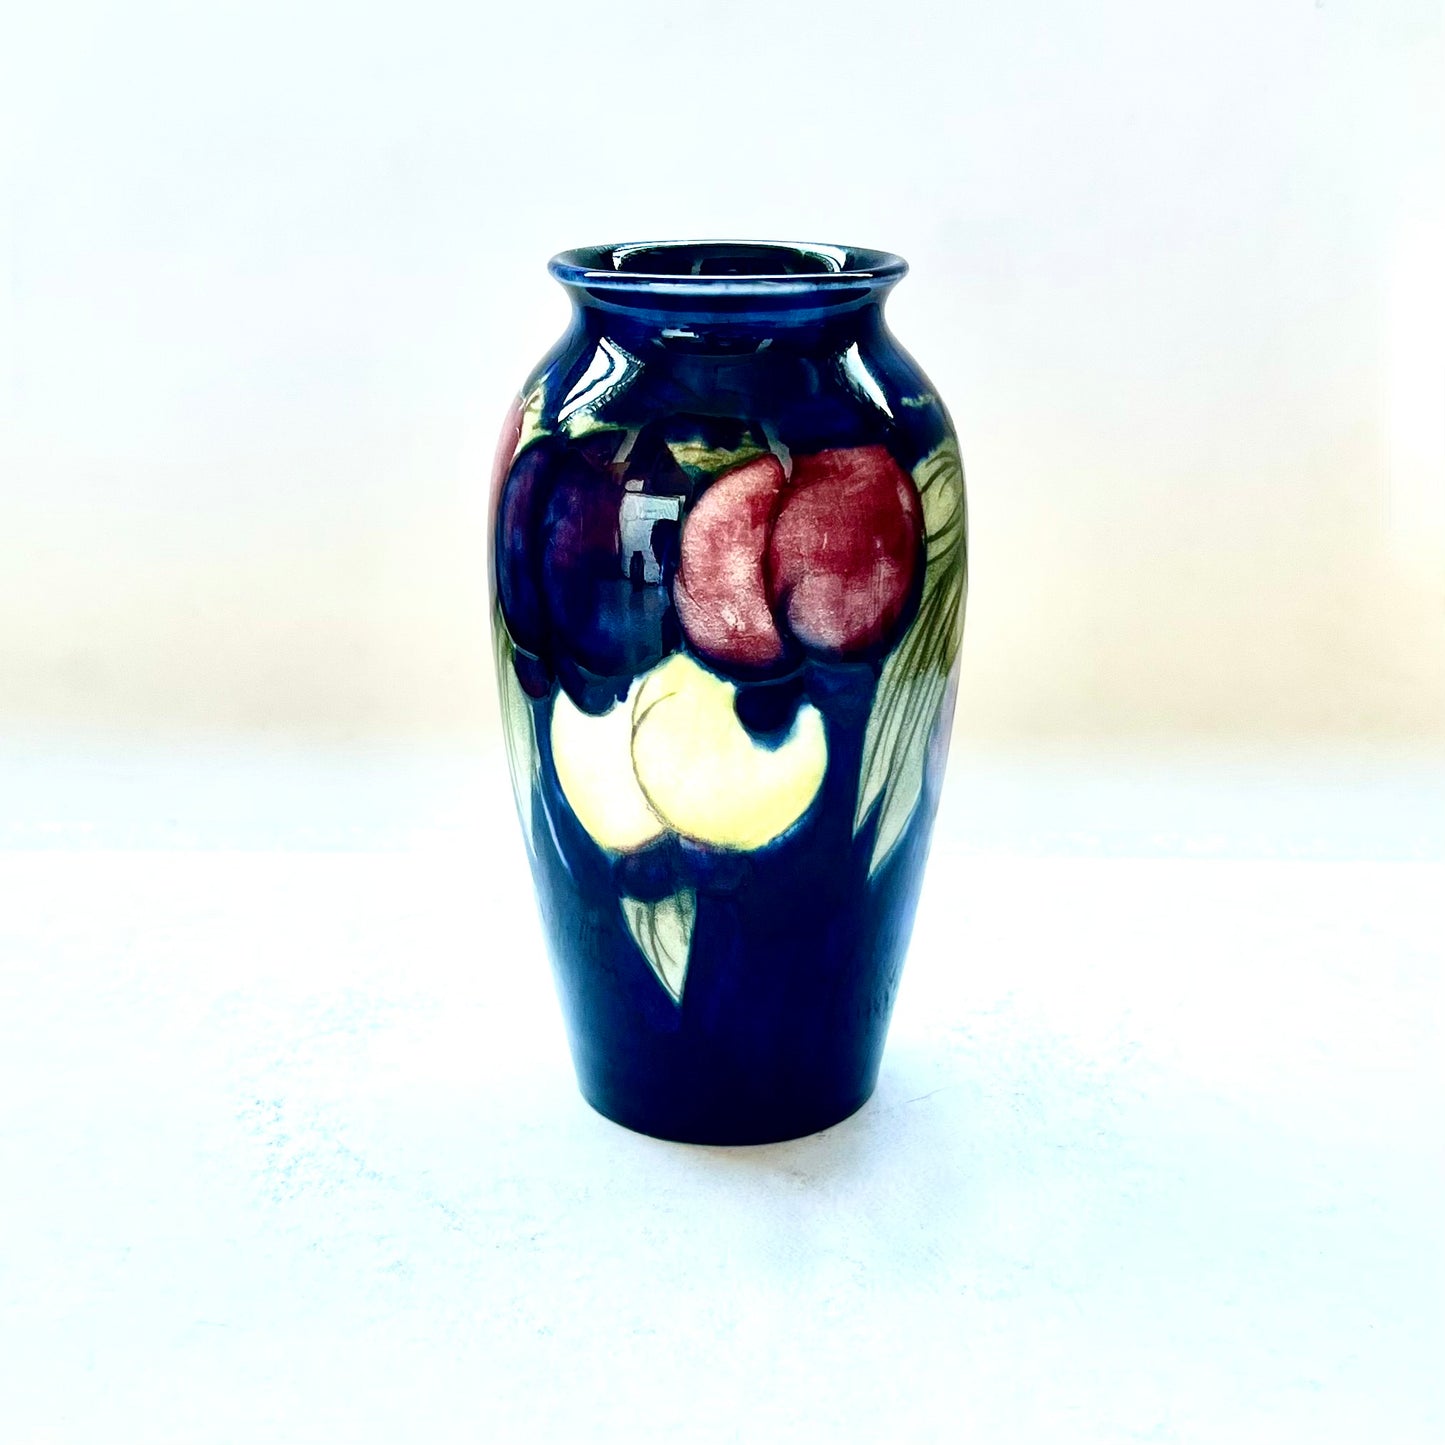 古董，可能为古董，20 世纪早期，威廉·莫克罗夫特紫藤花瓶，约 1918-1926 年